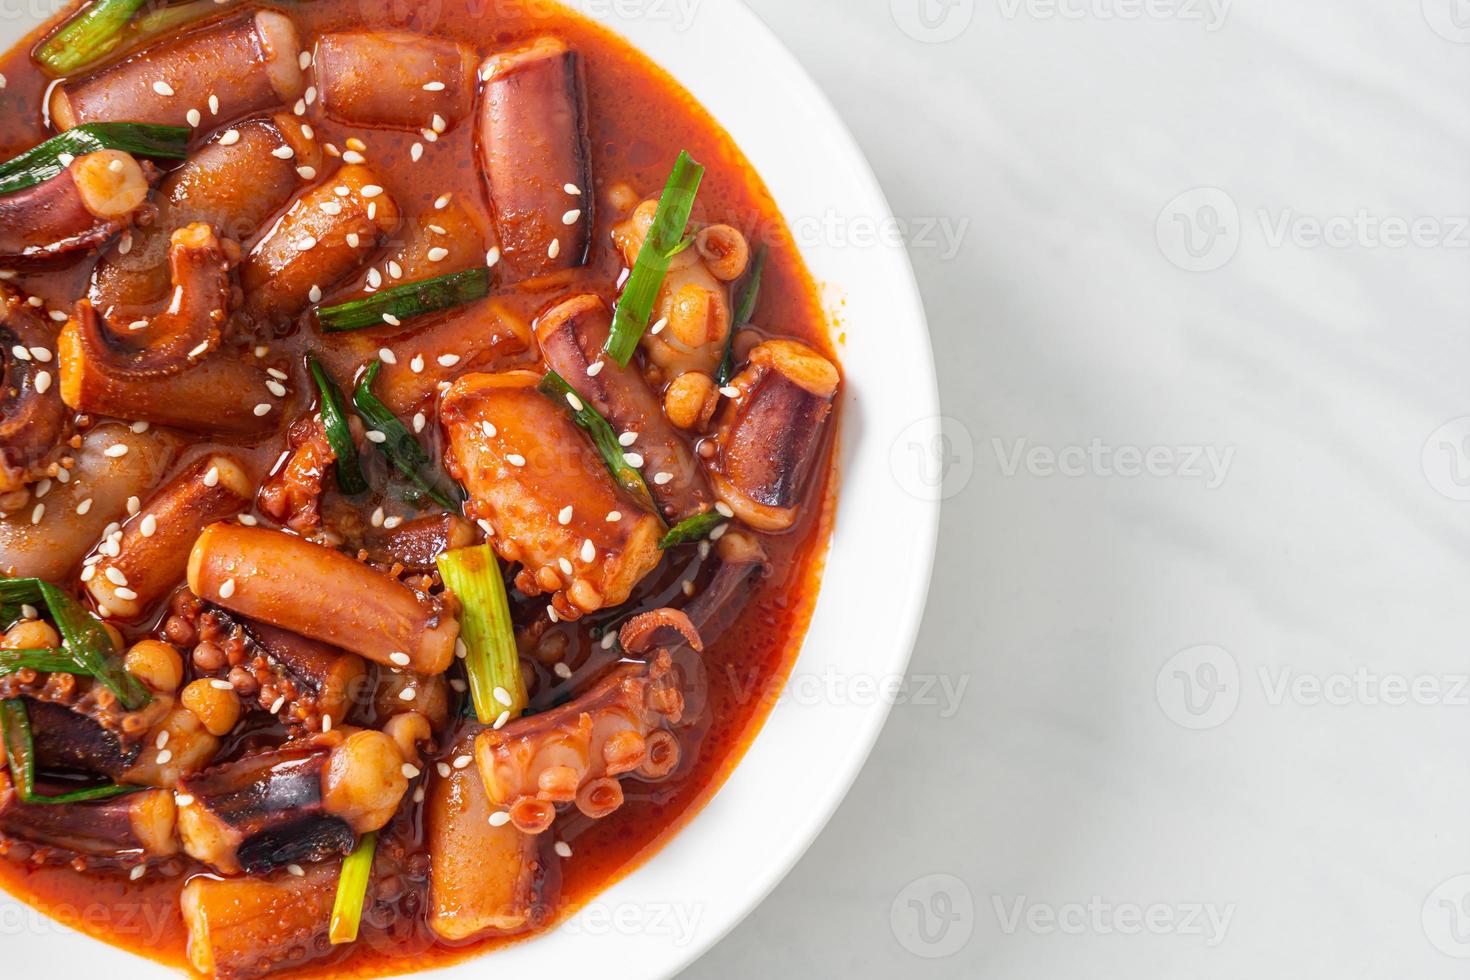 calamars ou poulpes sautés à la sauce coréenne épicée photo